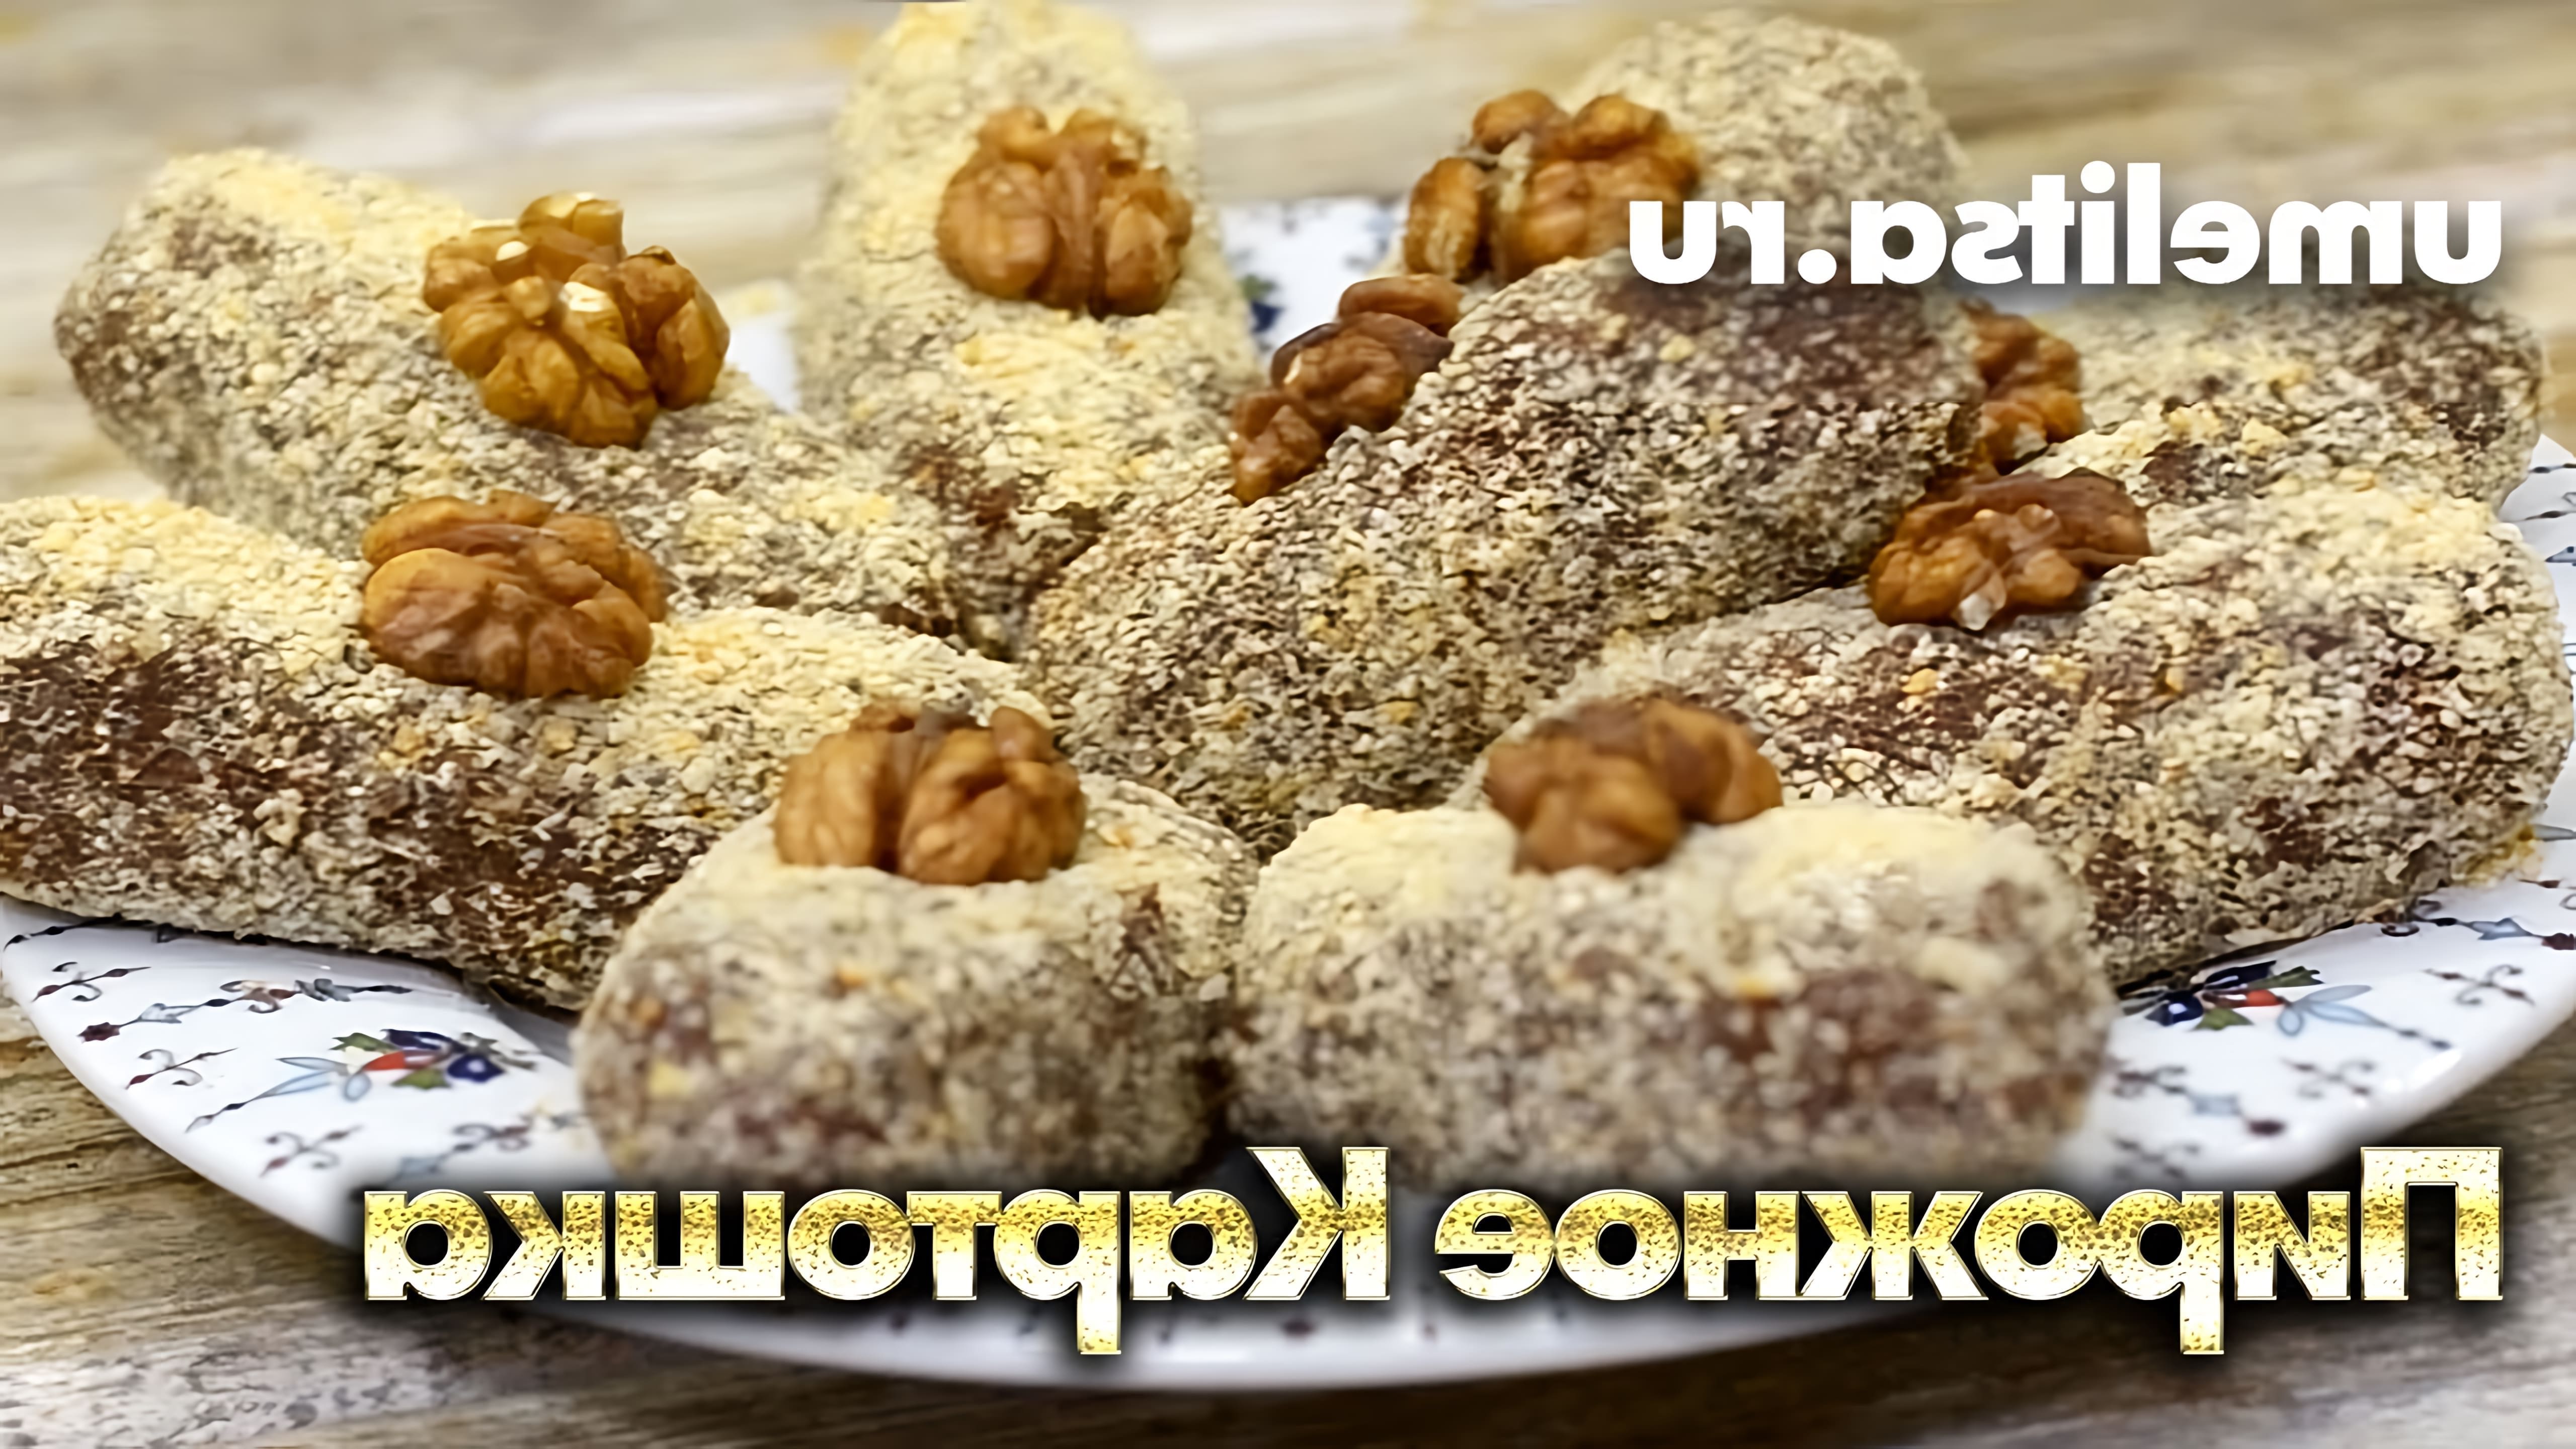 В этом видео-ролике будет показан простой и вкусный рецепт приготовления пирожного "Картошка" из печенья со сгущенкой